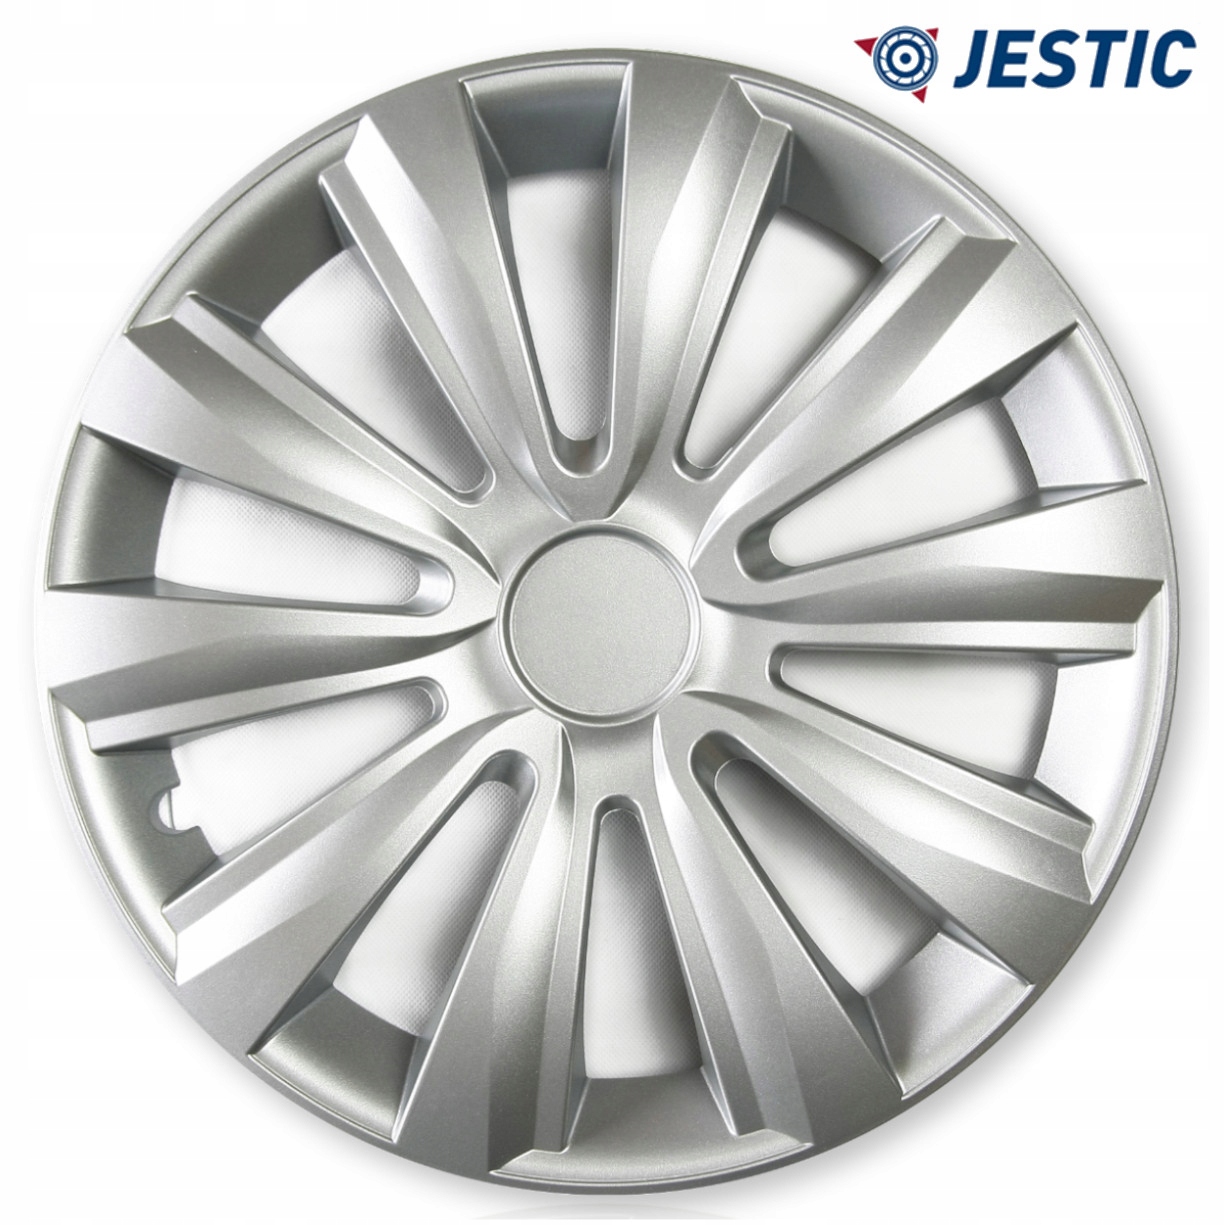 Jestic Delta 15" napakorkit, Universal Silver, valmistaja Jestic